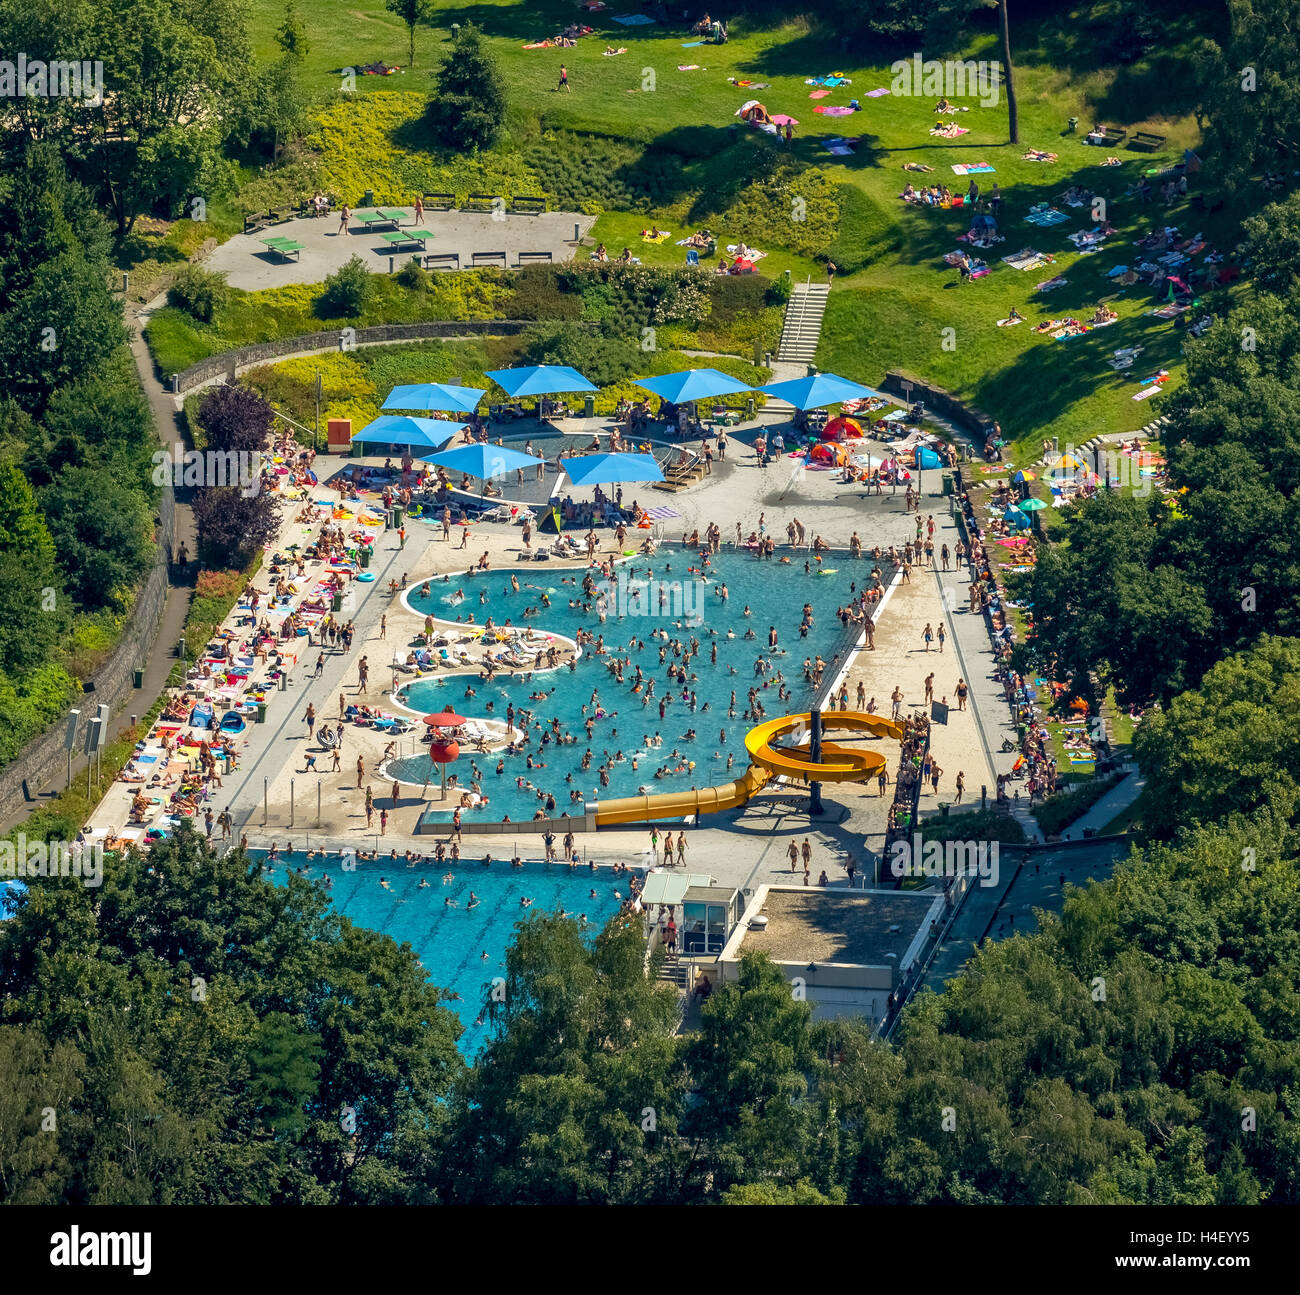 Vista aérea, la piscina, el nadador de piscina con un margen ondulado, césped, los bañistas en la piscina, Witten Annen, districto de Ruhr Foto de stock